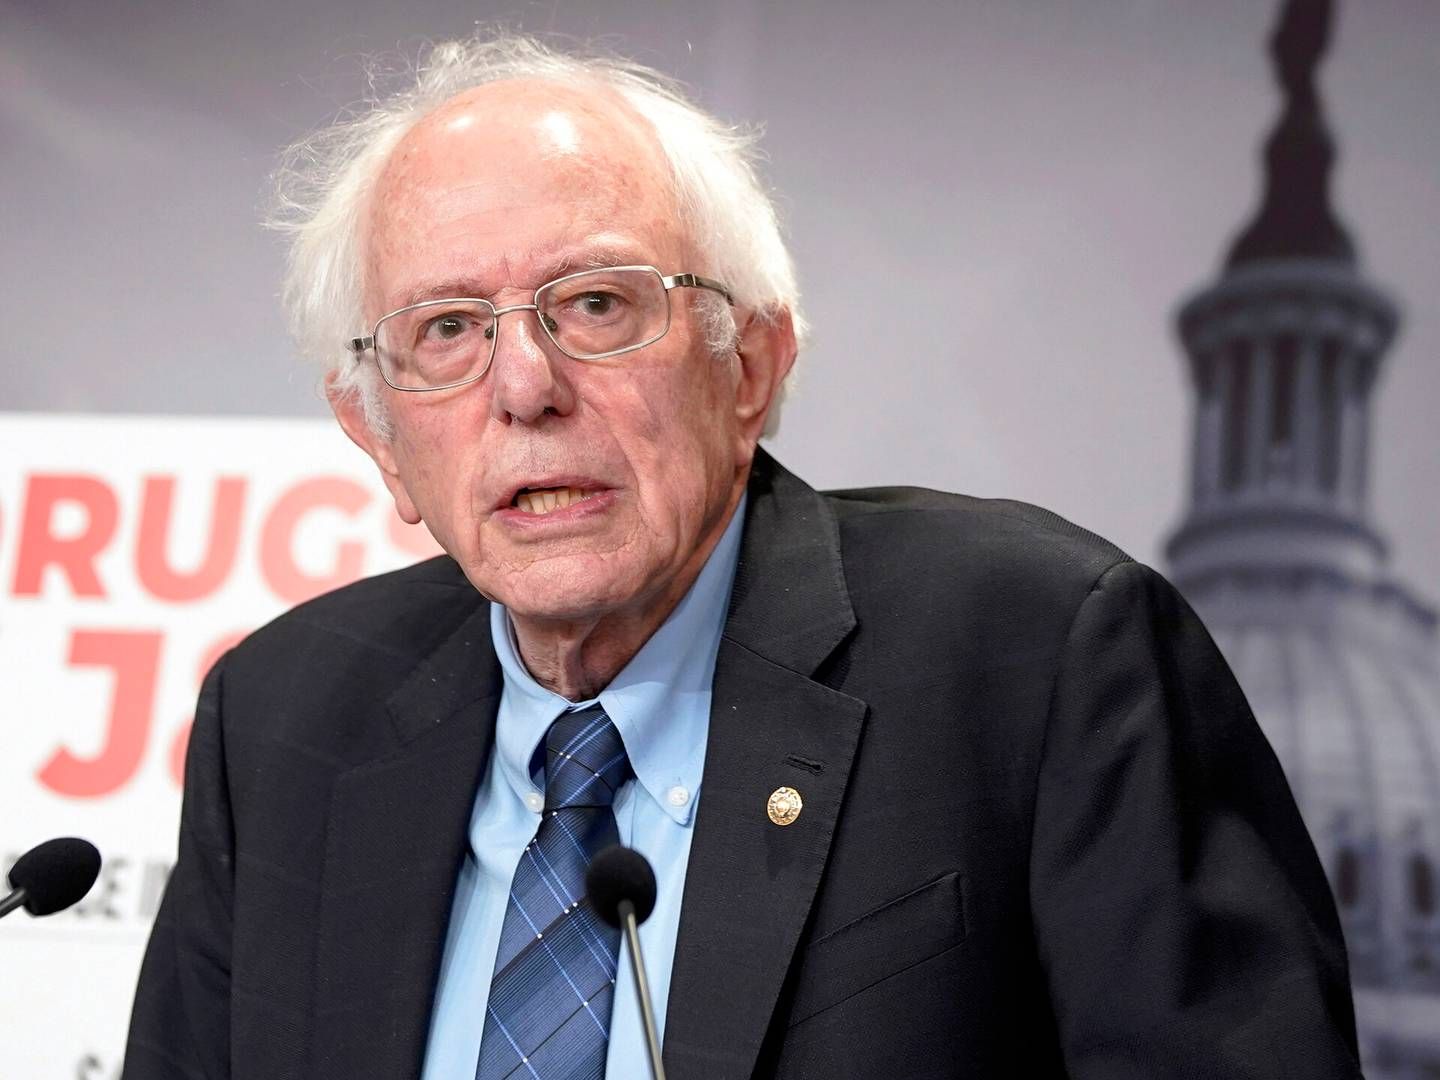 Senator Bernie Sanders langer ud efter Novo Nordisk i et debatindlæg mandag i Politiken | Foto: Mariam Zuhaib/AP/Ritzau Scanpix